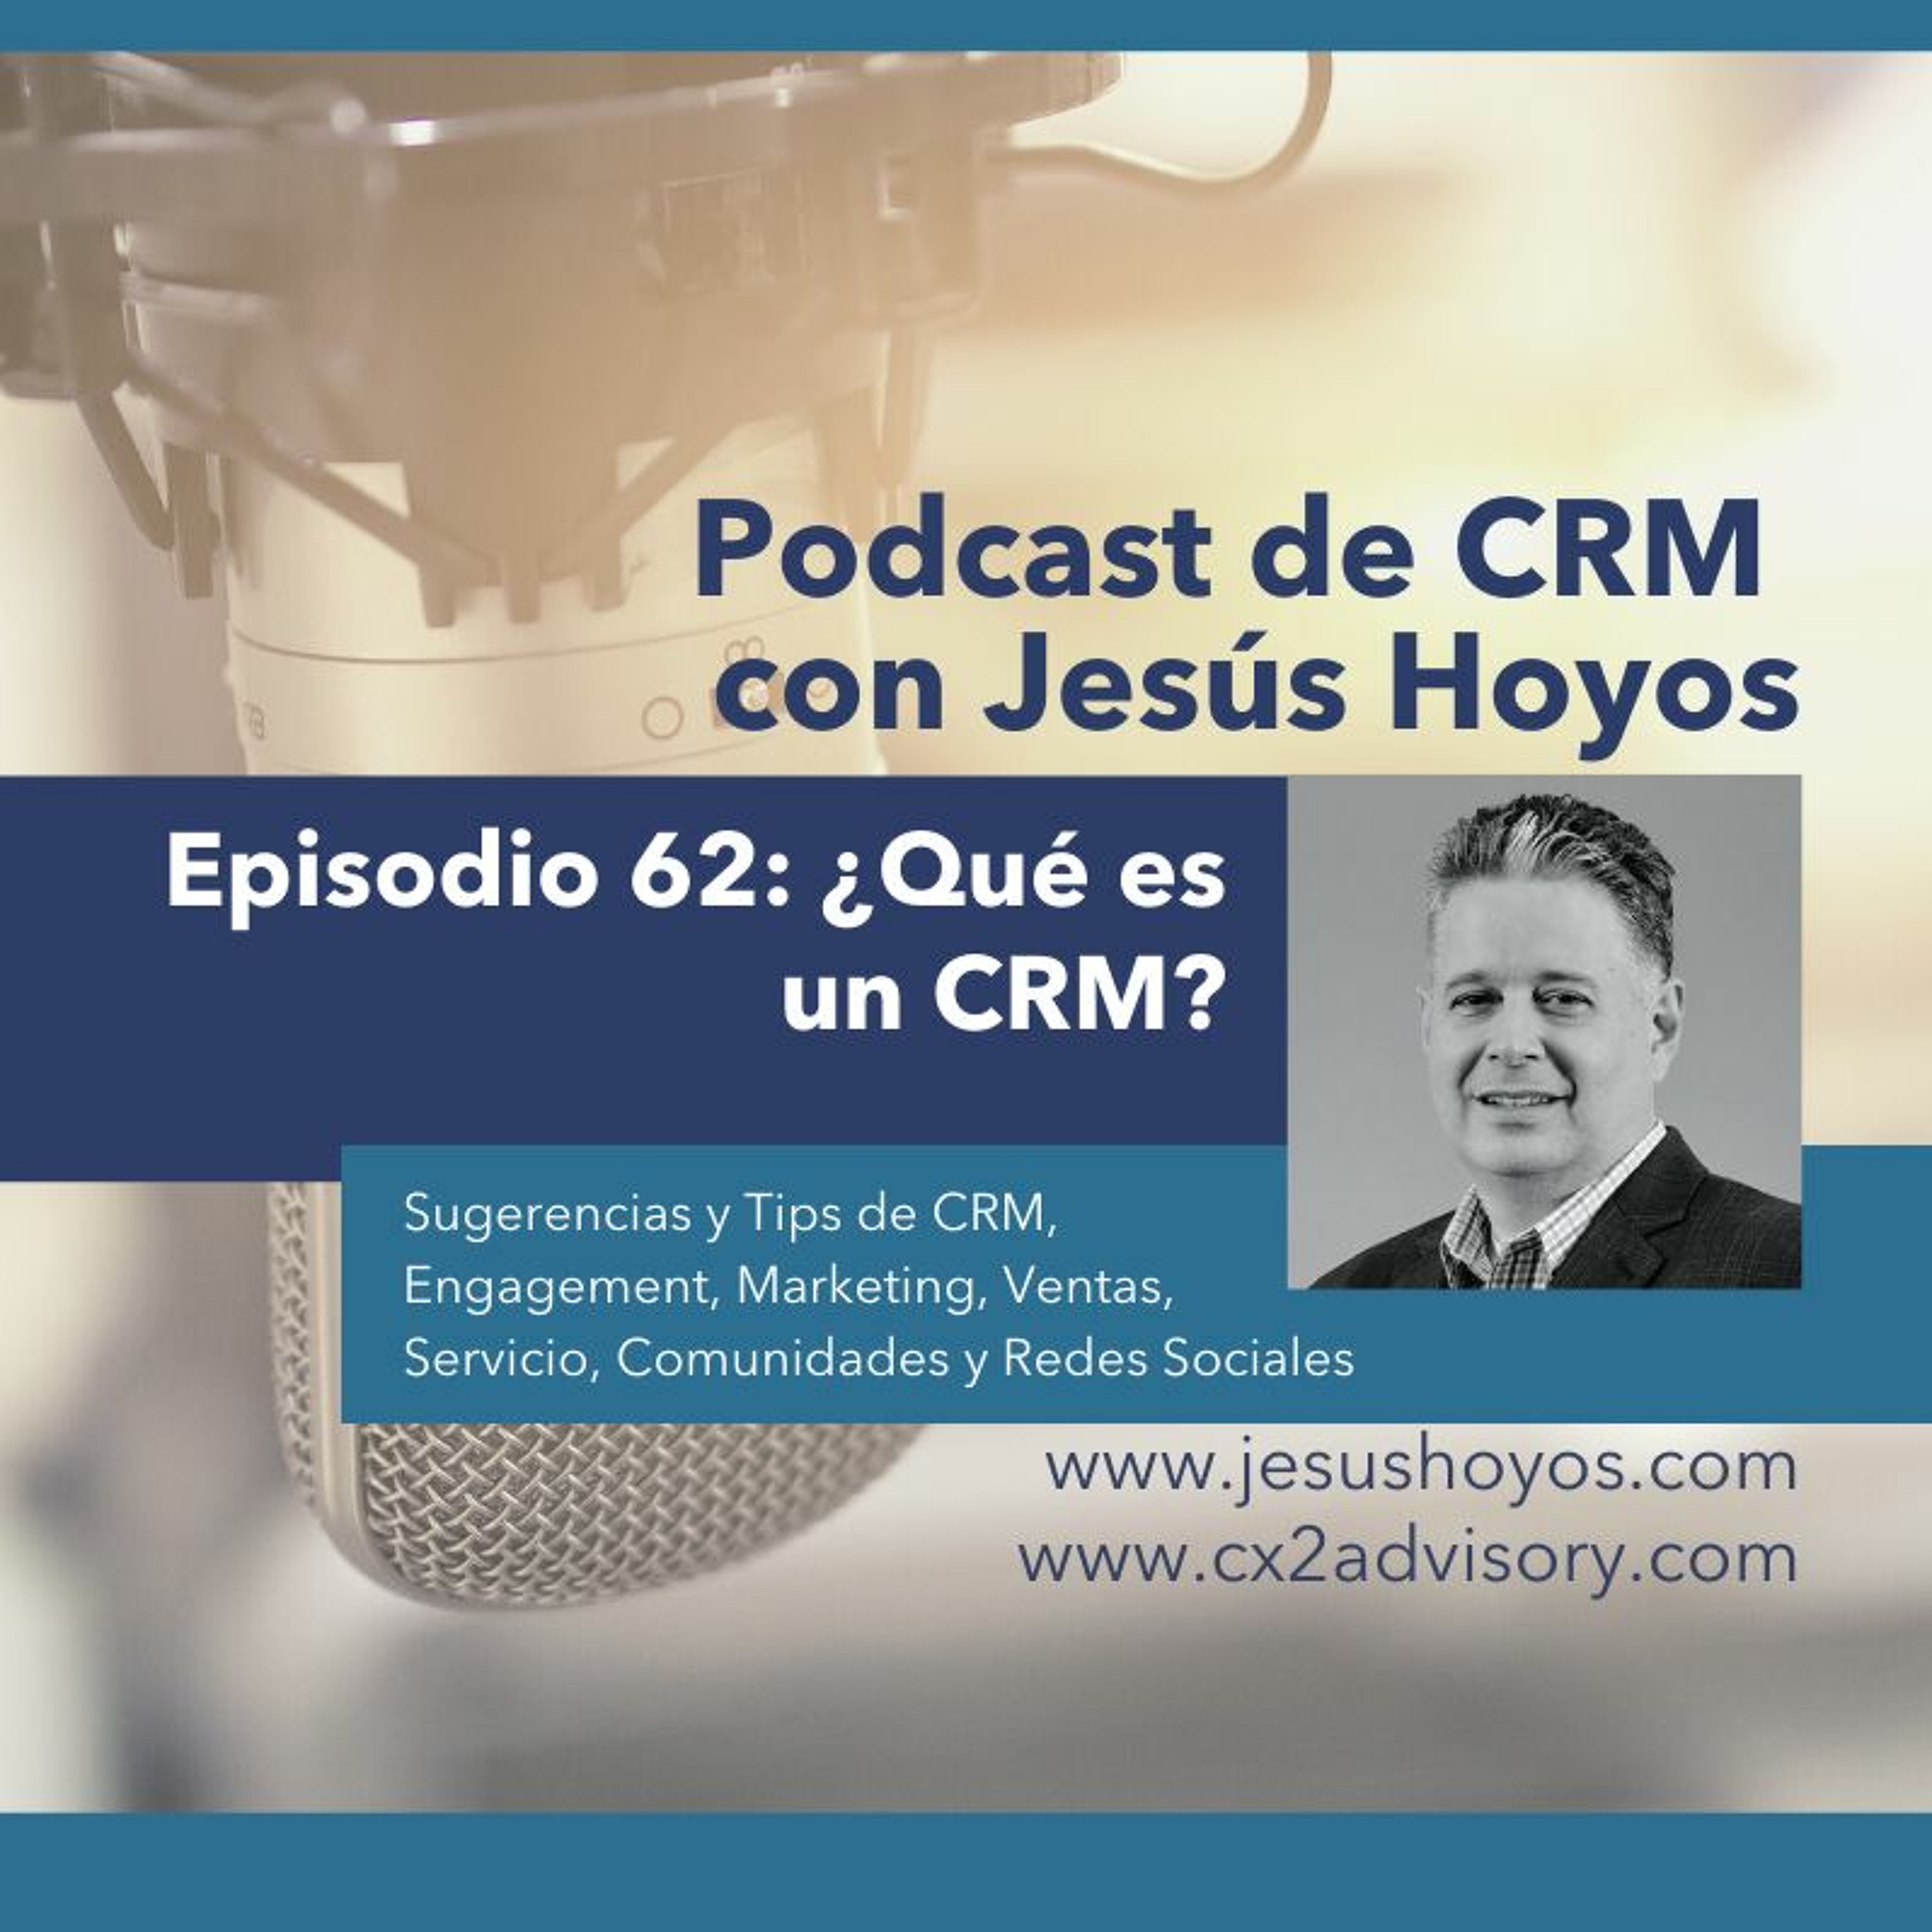 Podcast de CRM con Jesús Hoyos: Episodio 62 - ¿Qué es un CRM?